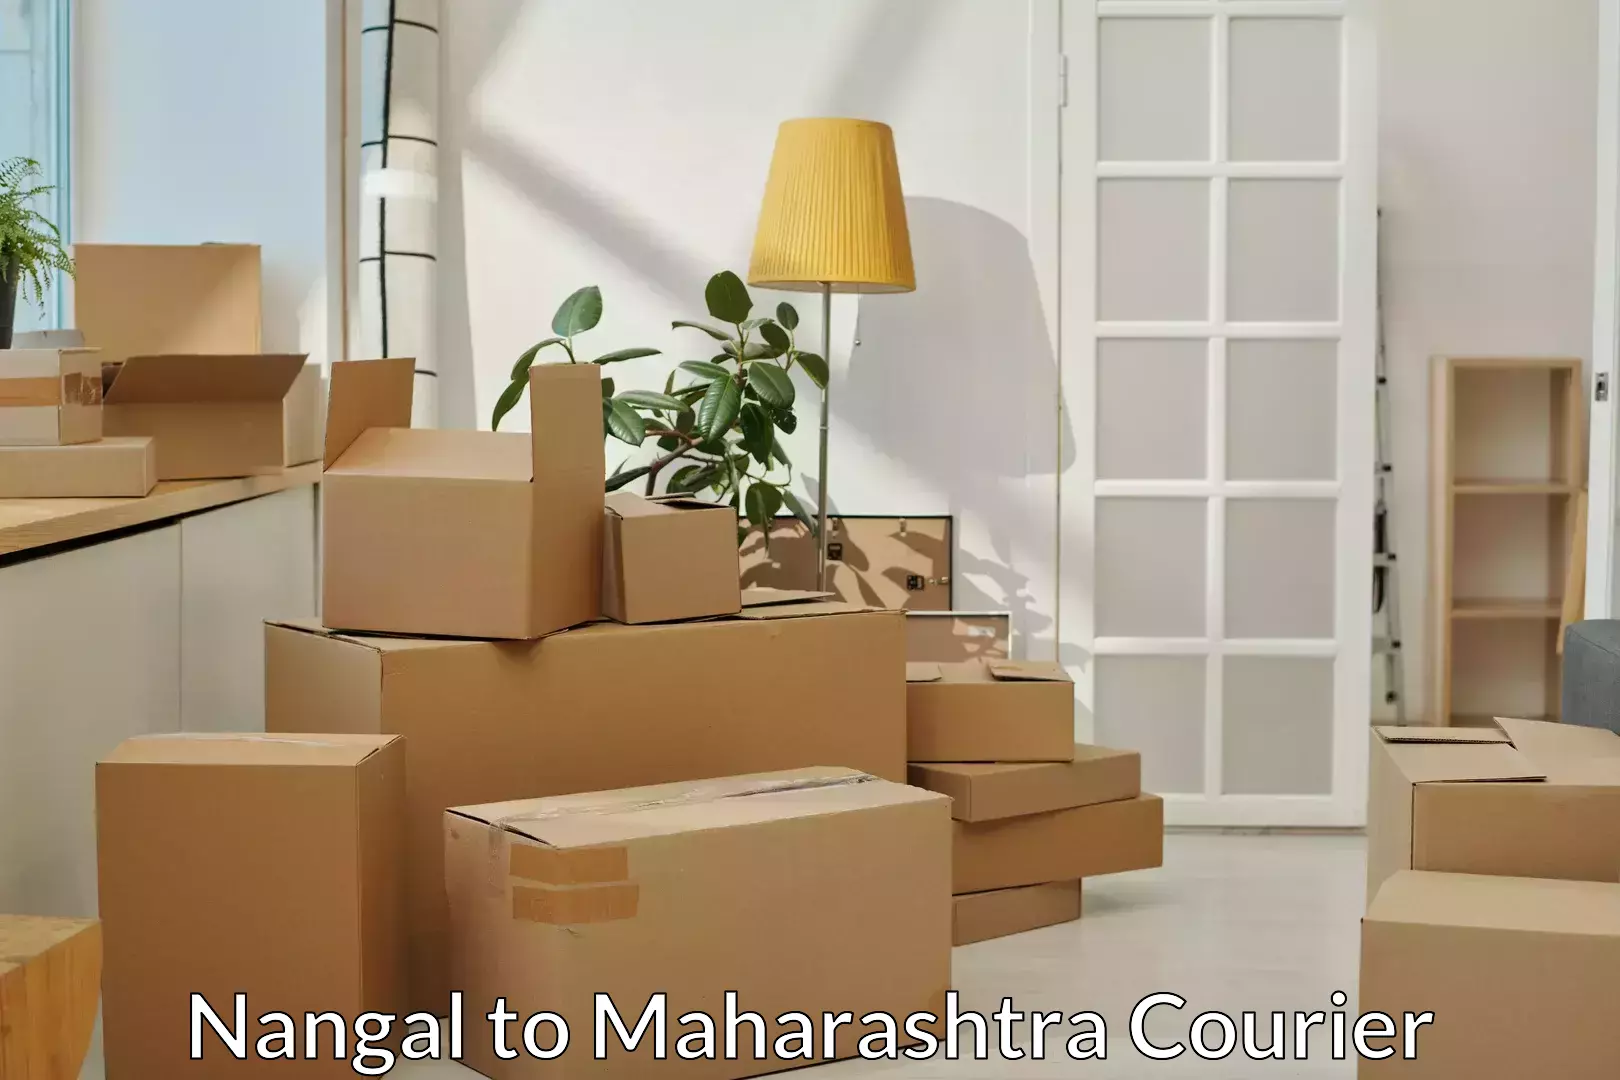 Full-service furniture transport Nangal to Palghar